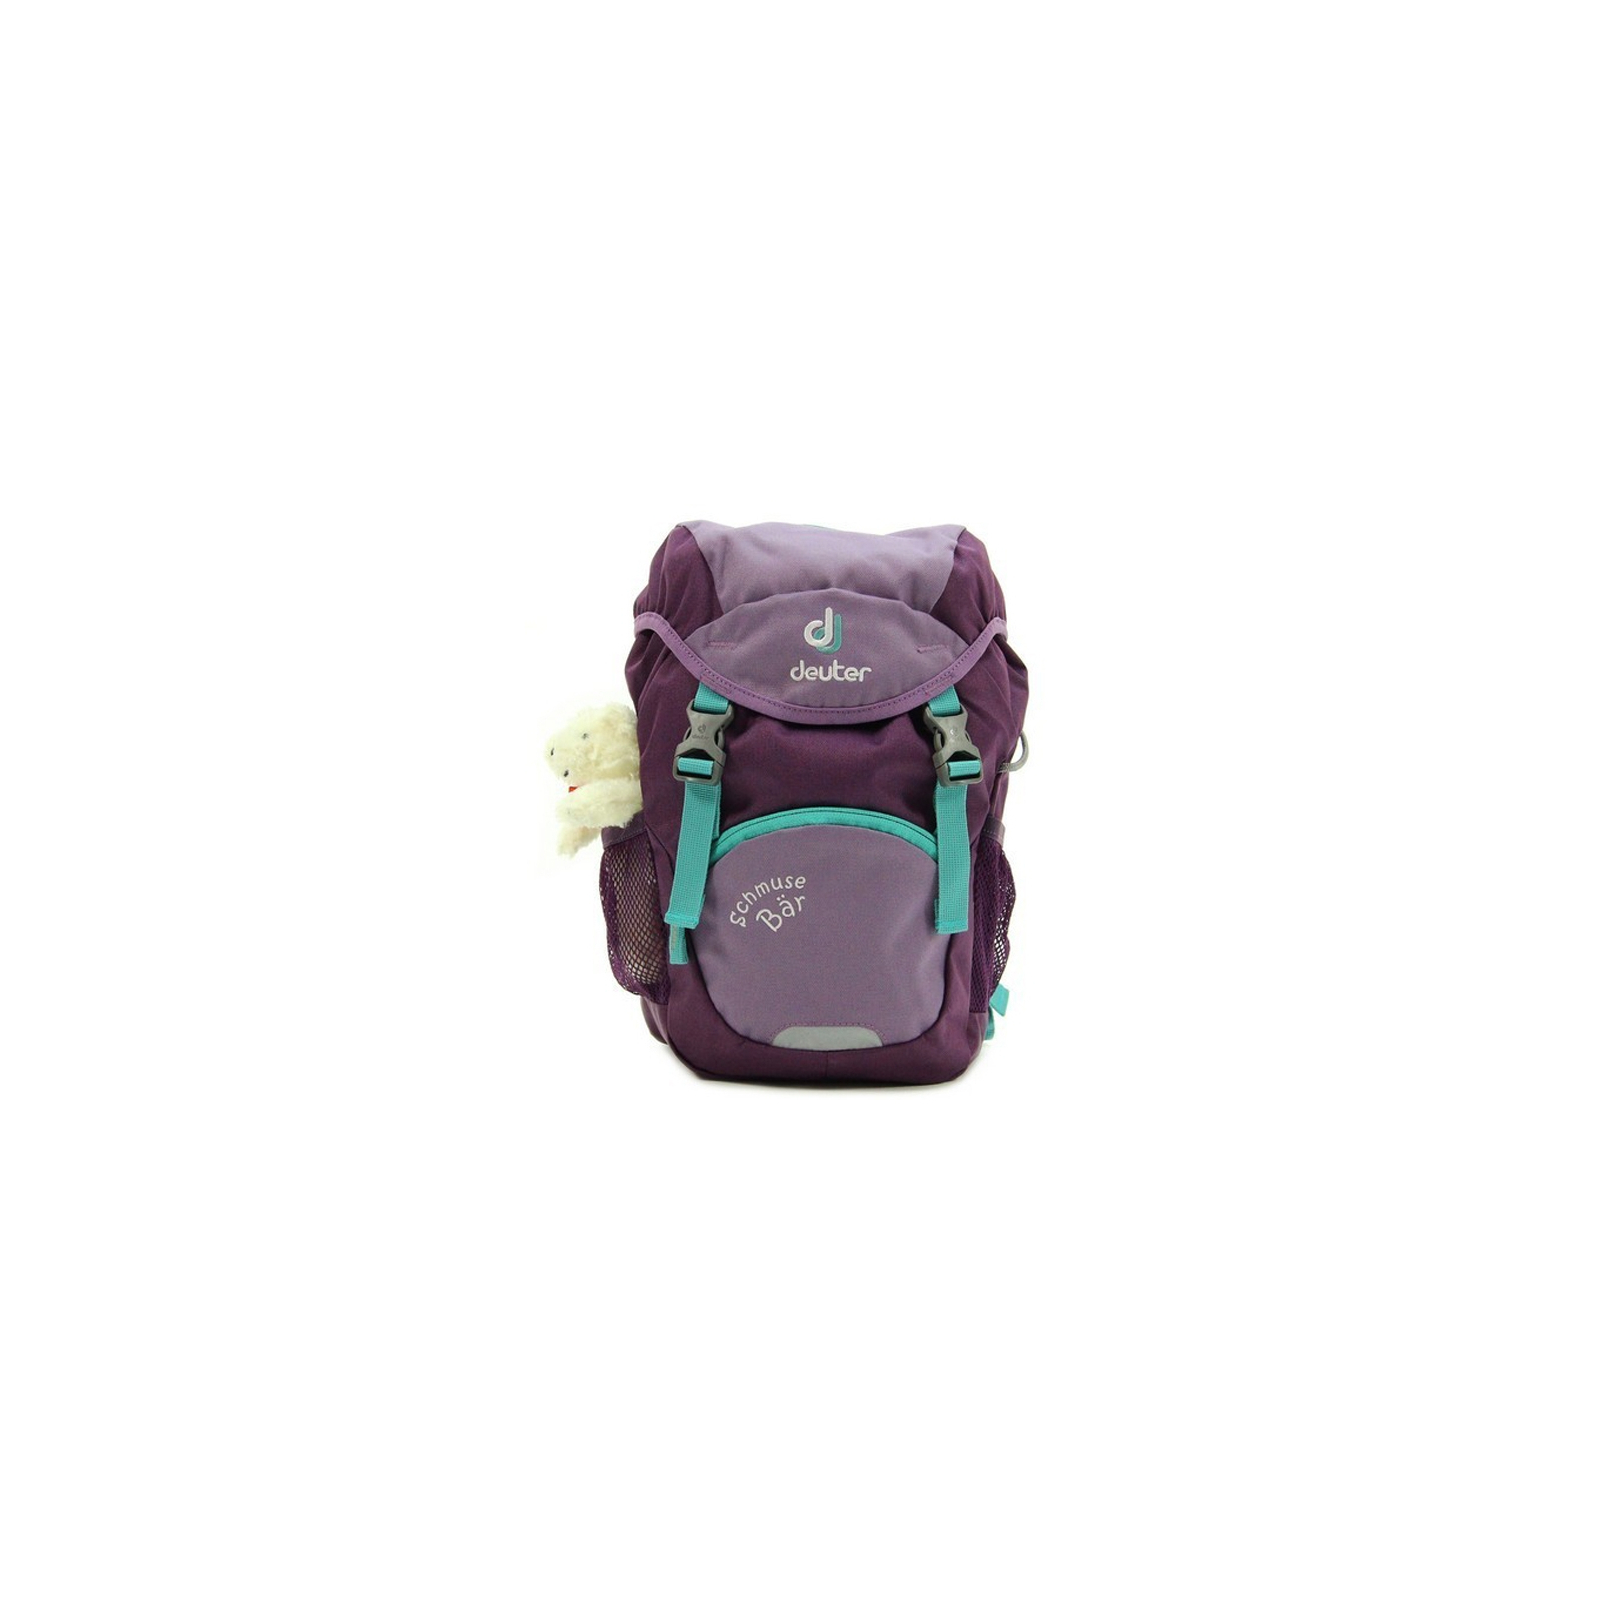 Рюкзак школьный Deuter Schmusebar 5538 flieder-plum (3612017 5538) изображение 4